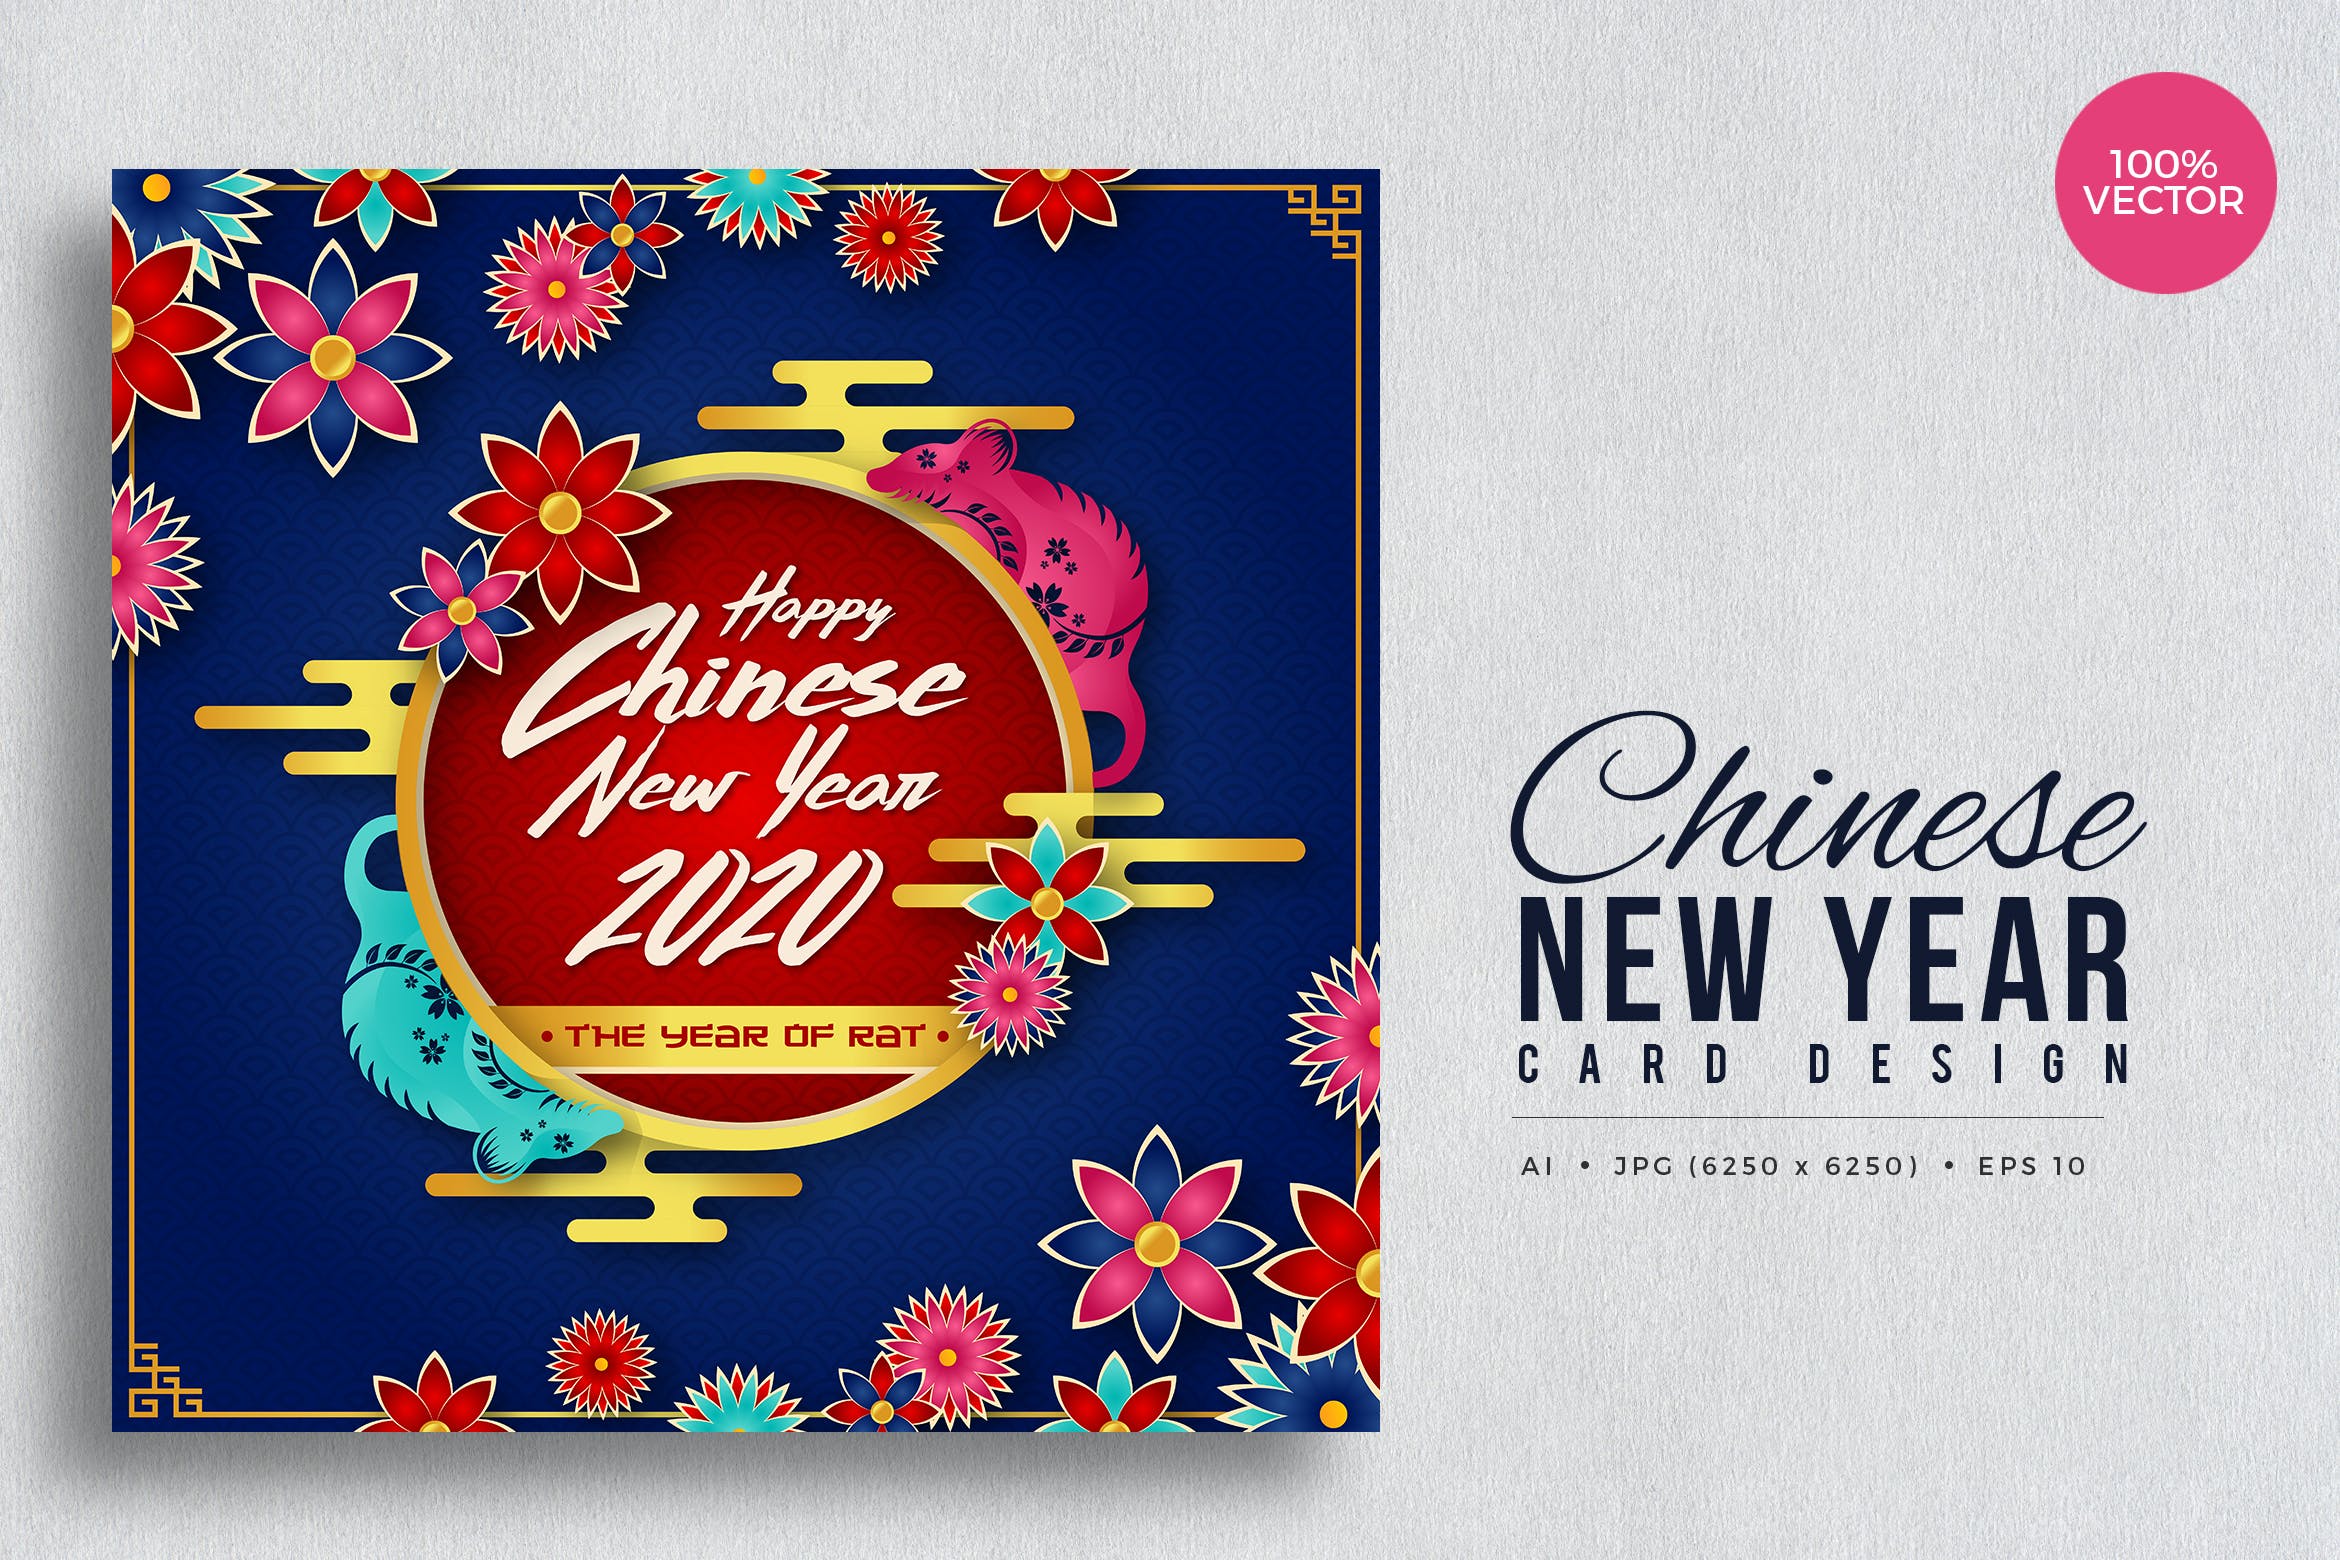 贺卡设计中国农历新年矢量素材v6 Chinese New Year, Rat Year Vector Card Vol.6设计素材模板